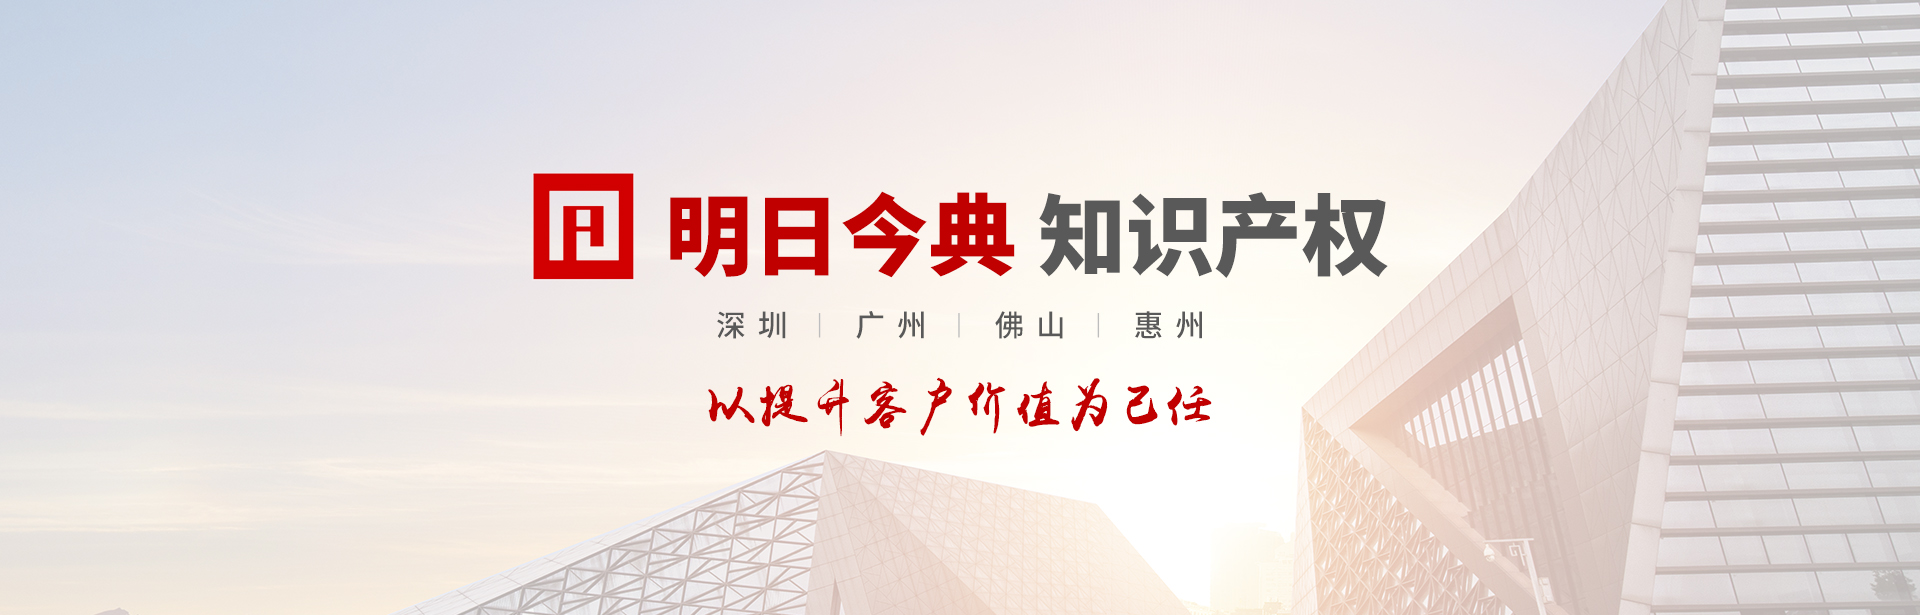 深圳市发展和改革委员会关于开展2023年度总部企业复查工作的通知